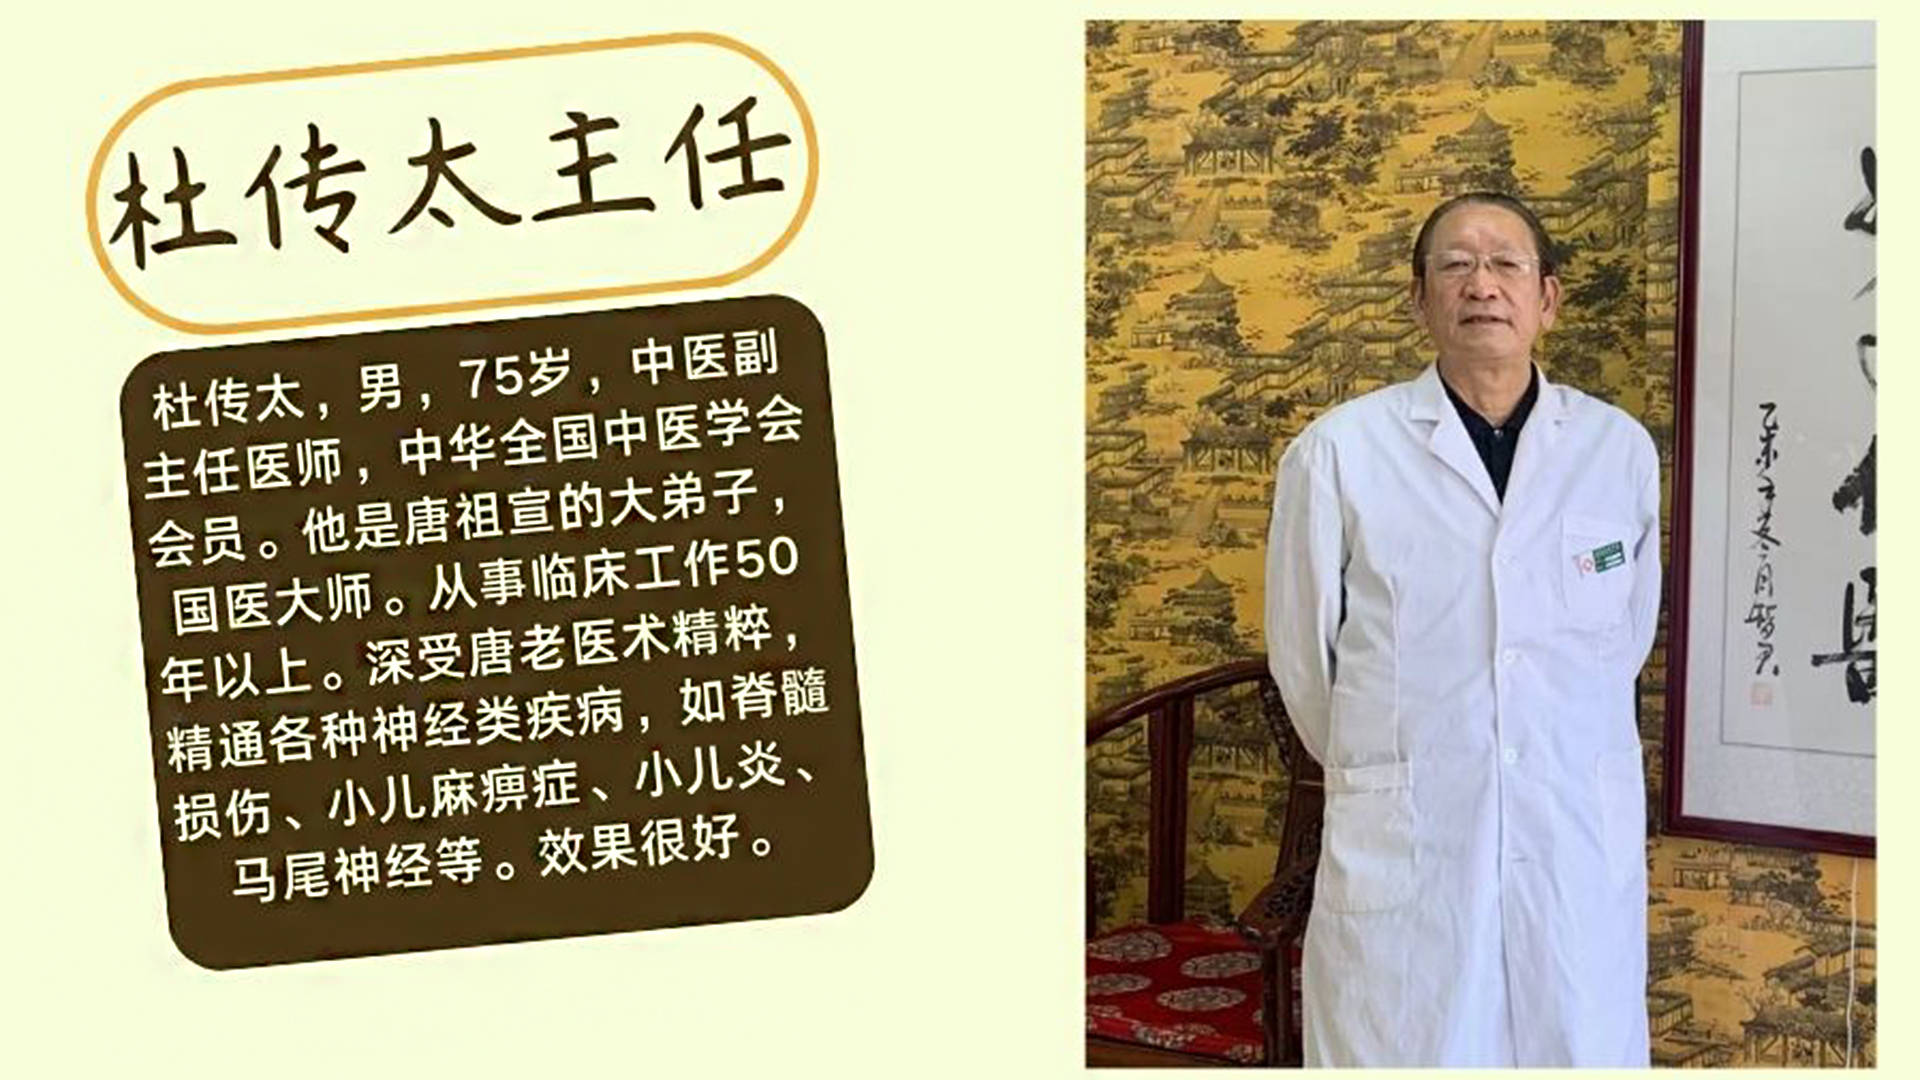 症,神经系统疑难杂症杜传太主任出生于1948年,男,75岁,中医副主任医师